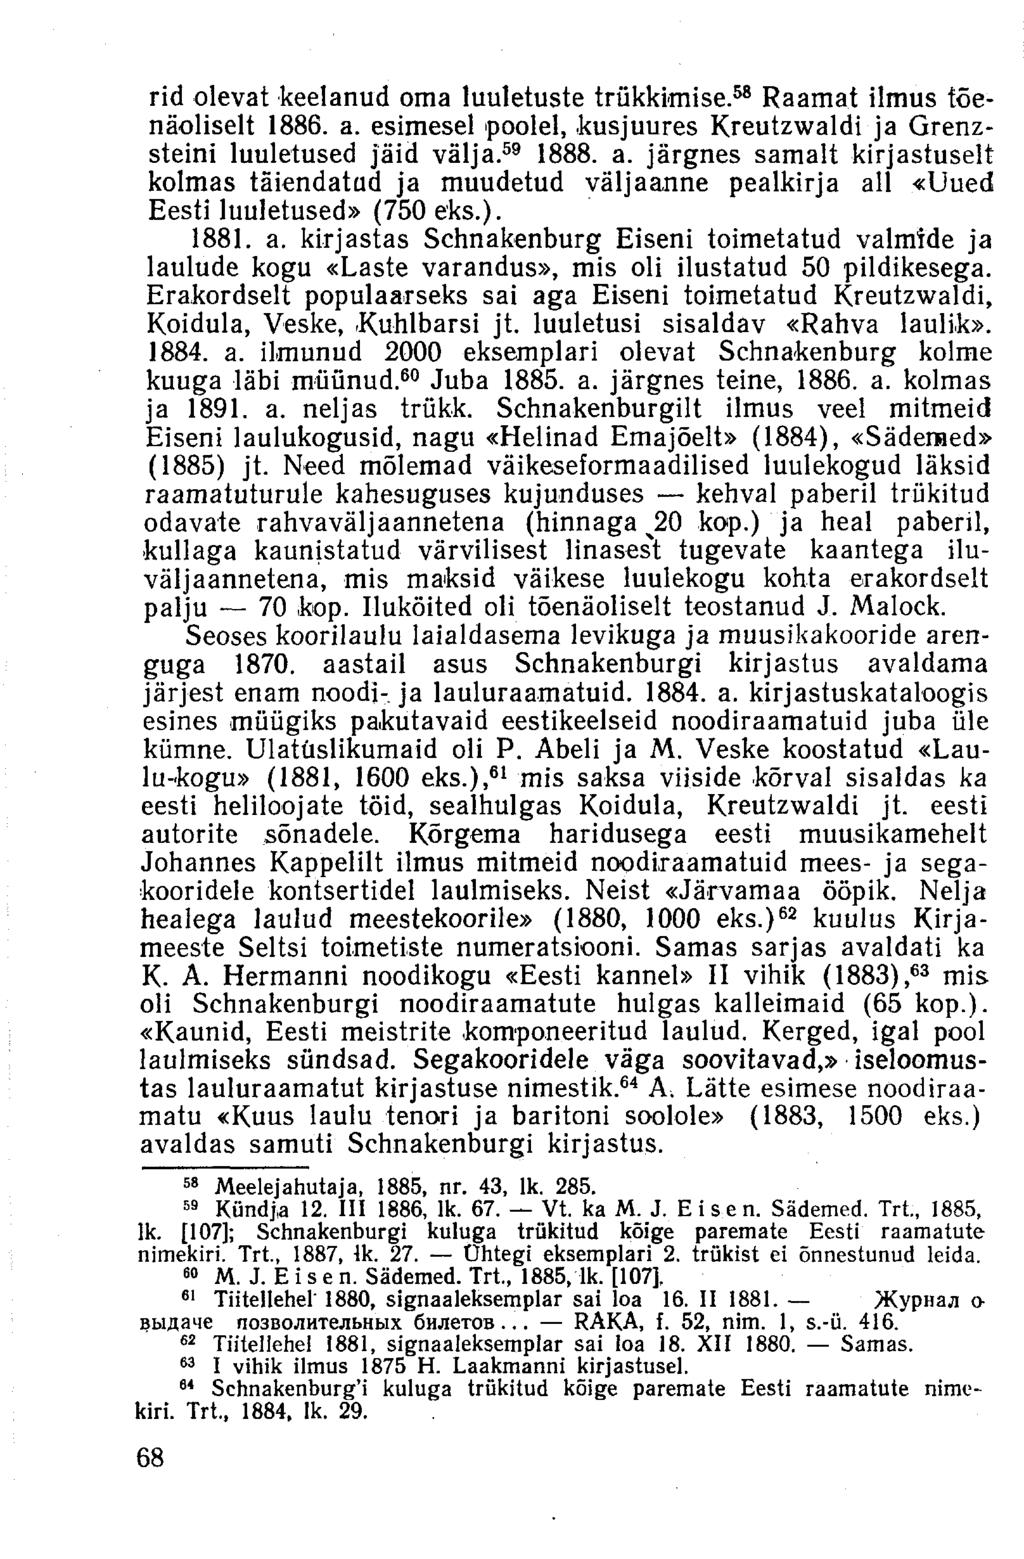 rid olevat keelanud oma luuletuste trükkimise. 58 Raamat ilmus tõenäoliselt 1886. a. esimesel poolel, kusjuures Kreutzwaldi ja Grenzsteini luuletused jäid välja. 59 1888. a. järgnes samalt kirjastuselt kolmas täiendatud ja muudetud väljaanne pealkirja all «Uued Eesti luuletused» (750 eks.